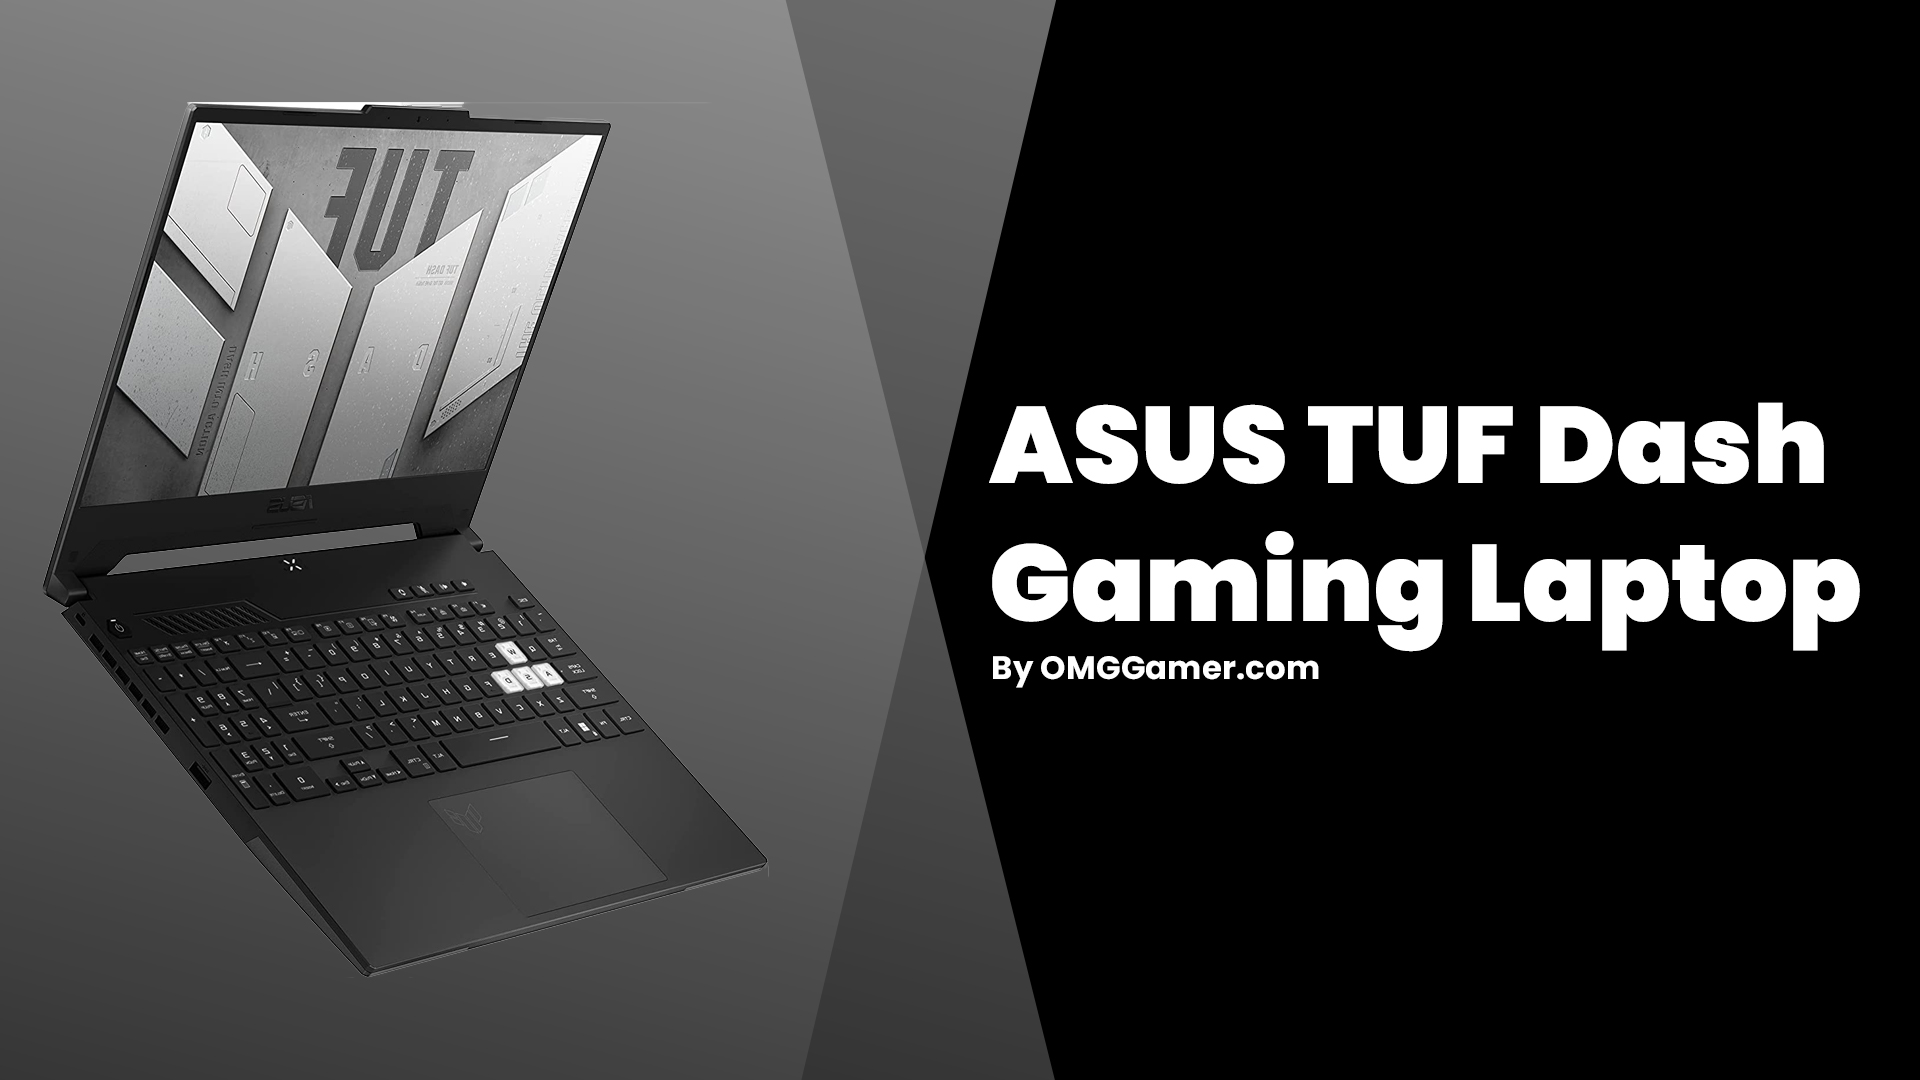 ASUS TUF Dash Gaming Laptop: 144hz Laptop